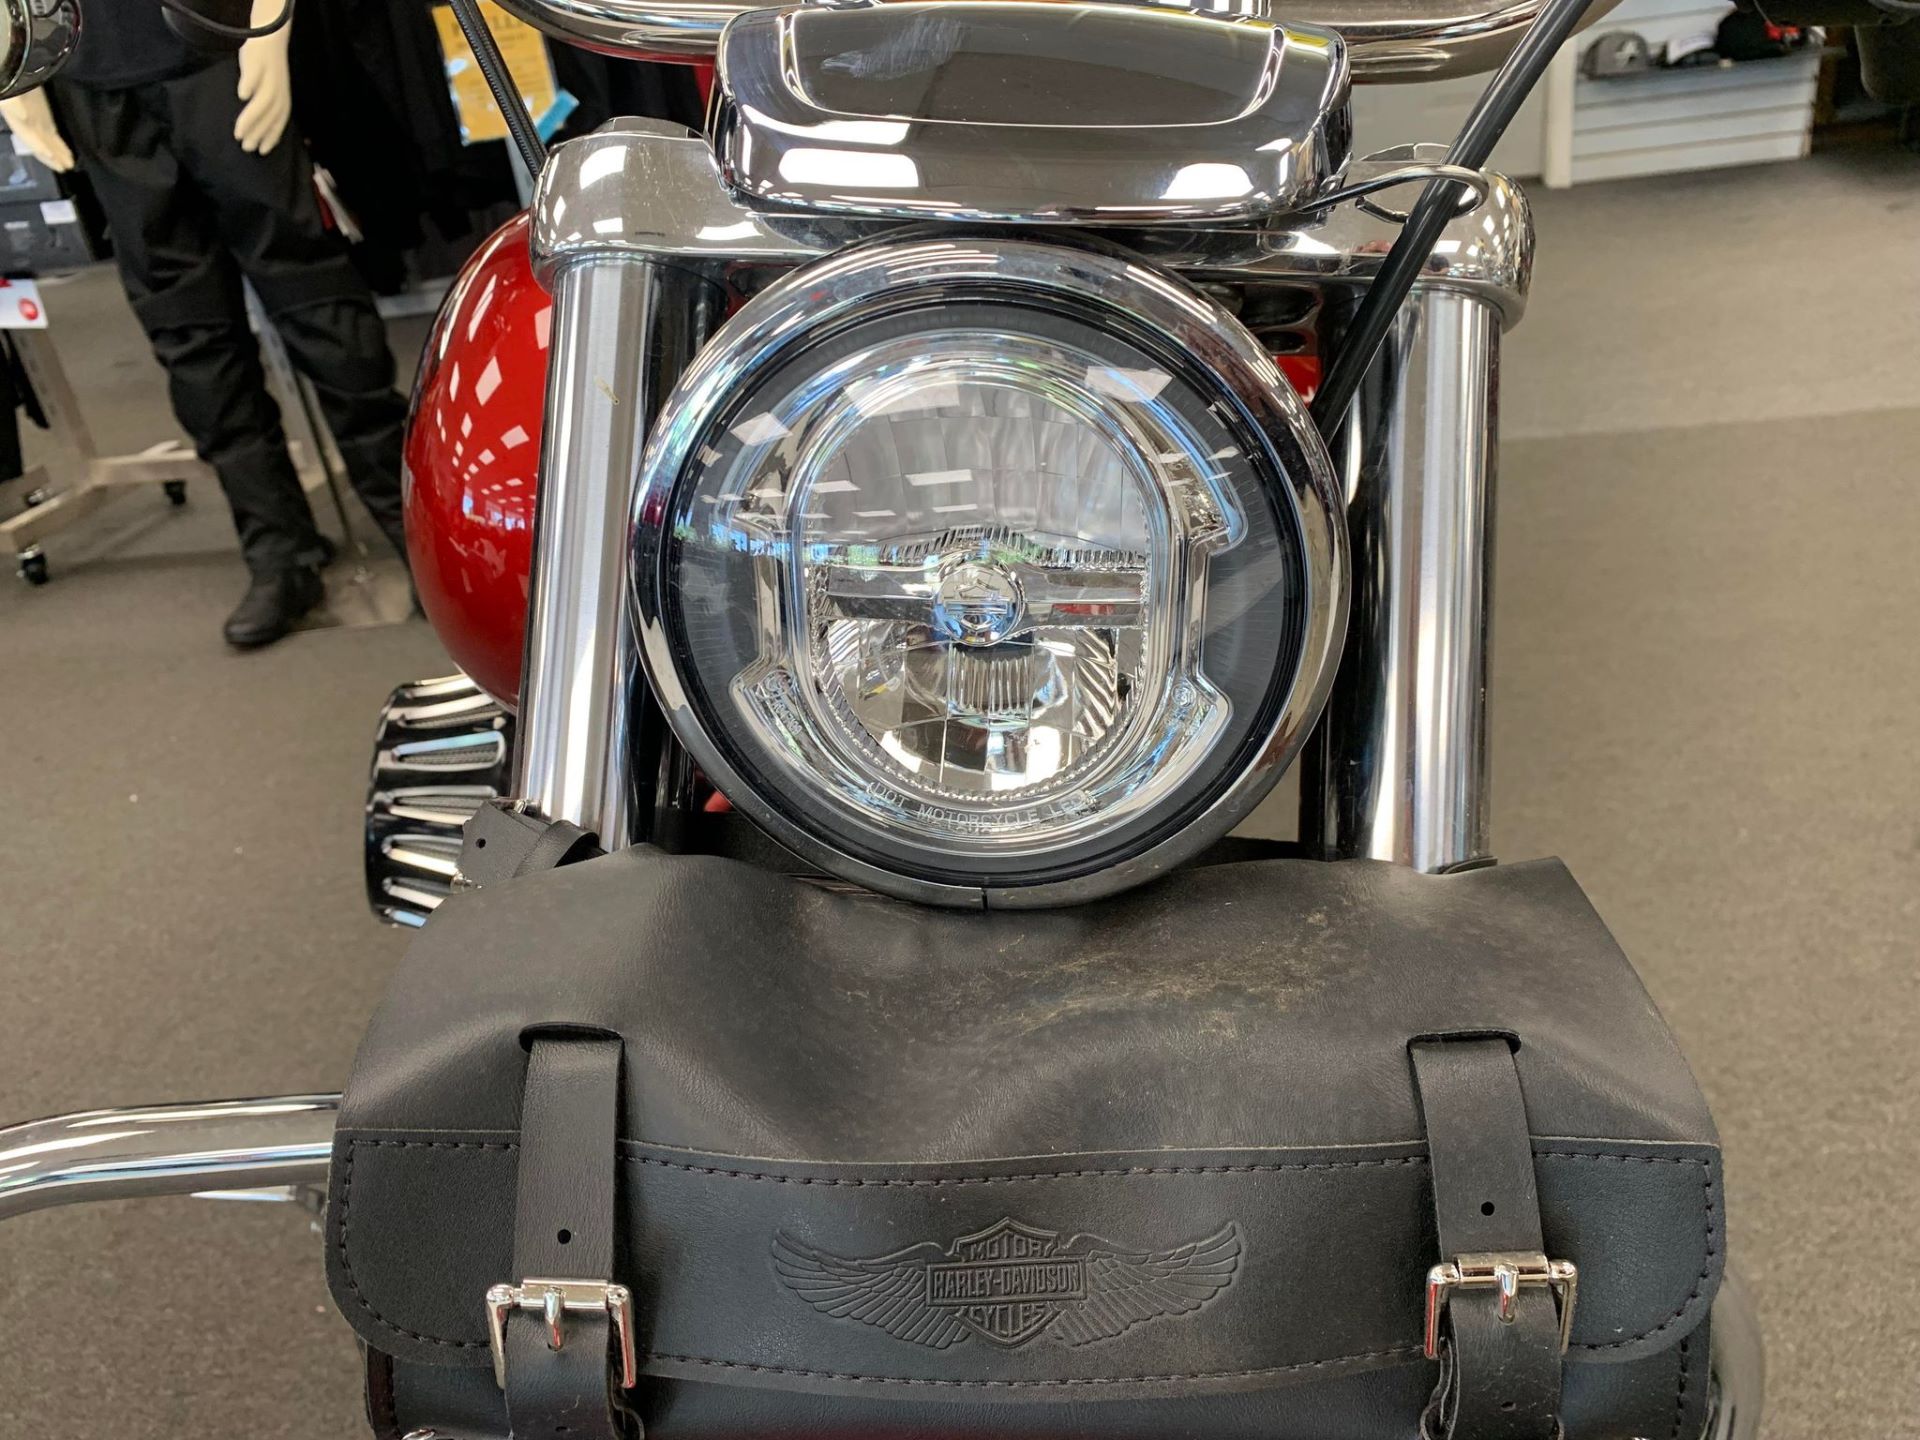 2018 Harley-Davidson Low Rider® 107 in Oklahoma City, Oklahoma - Photo 22